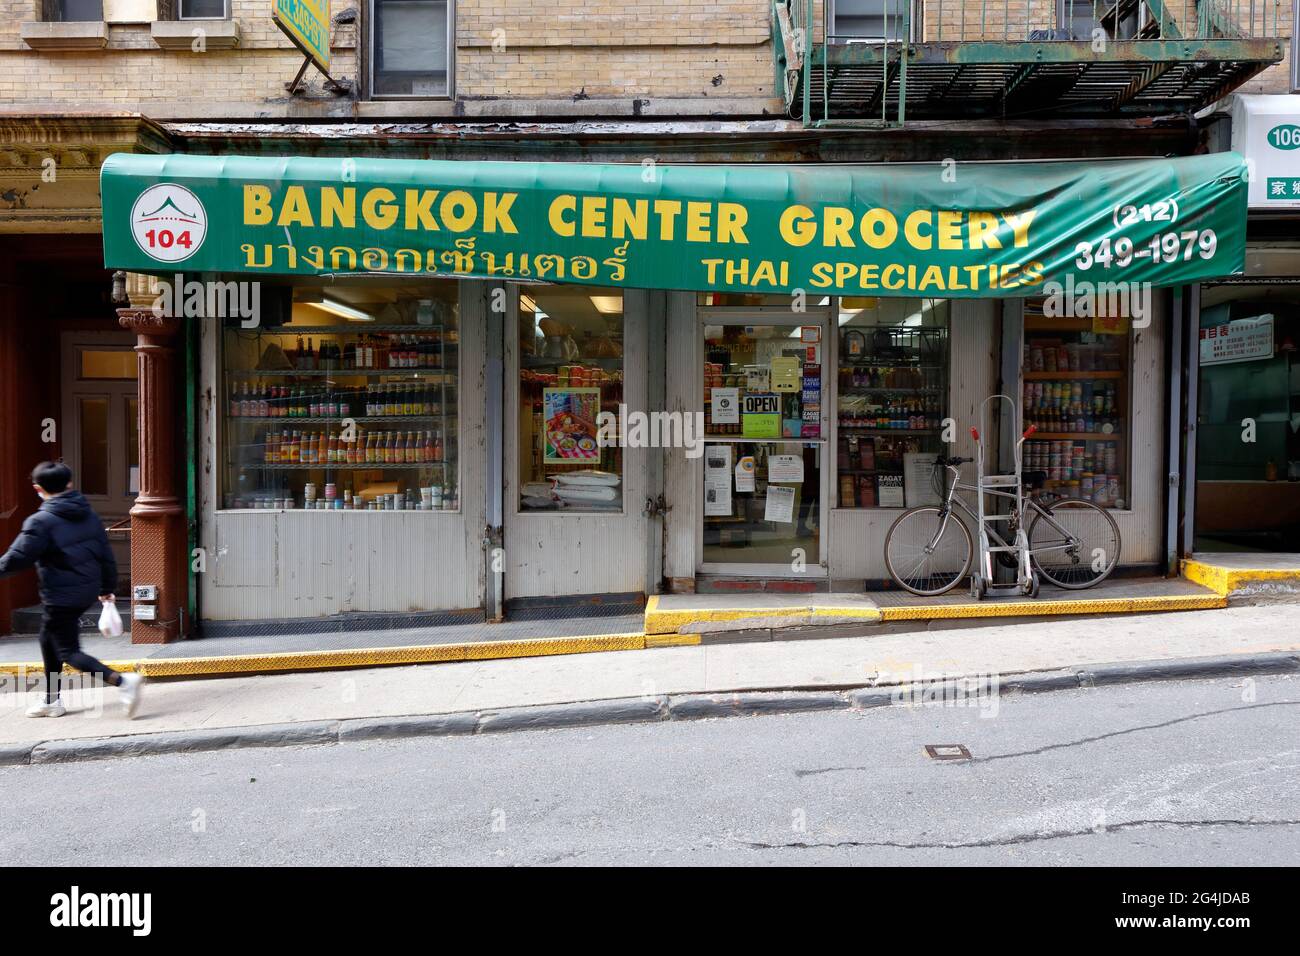 Bangkok Center Grocery, 104 Mosco St, New York, foto del negozio di alimentari tailandesi a Manhattan Chinatown. Foto Stock